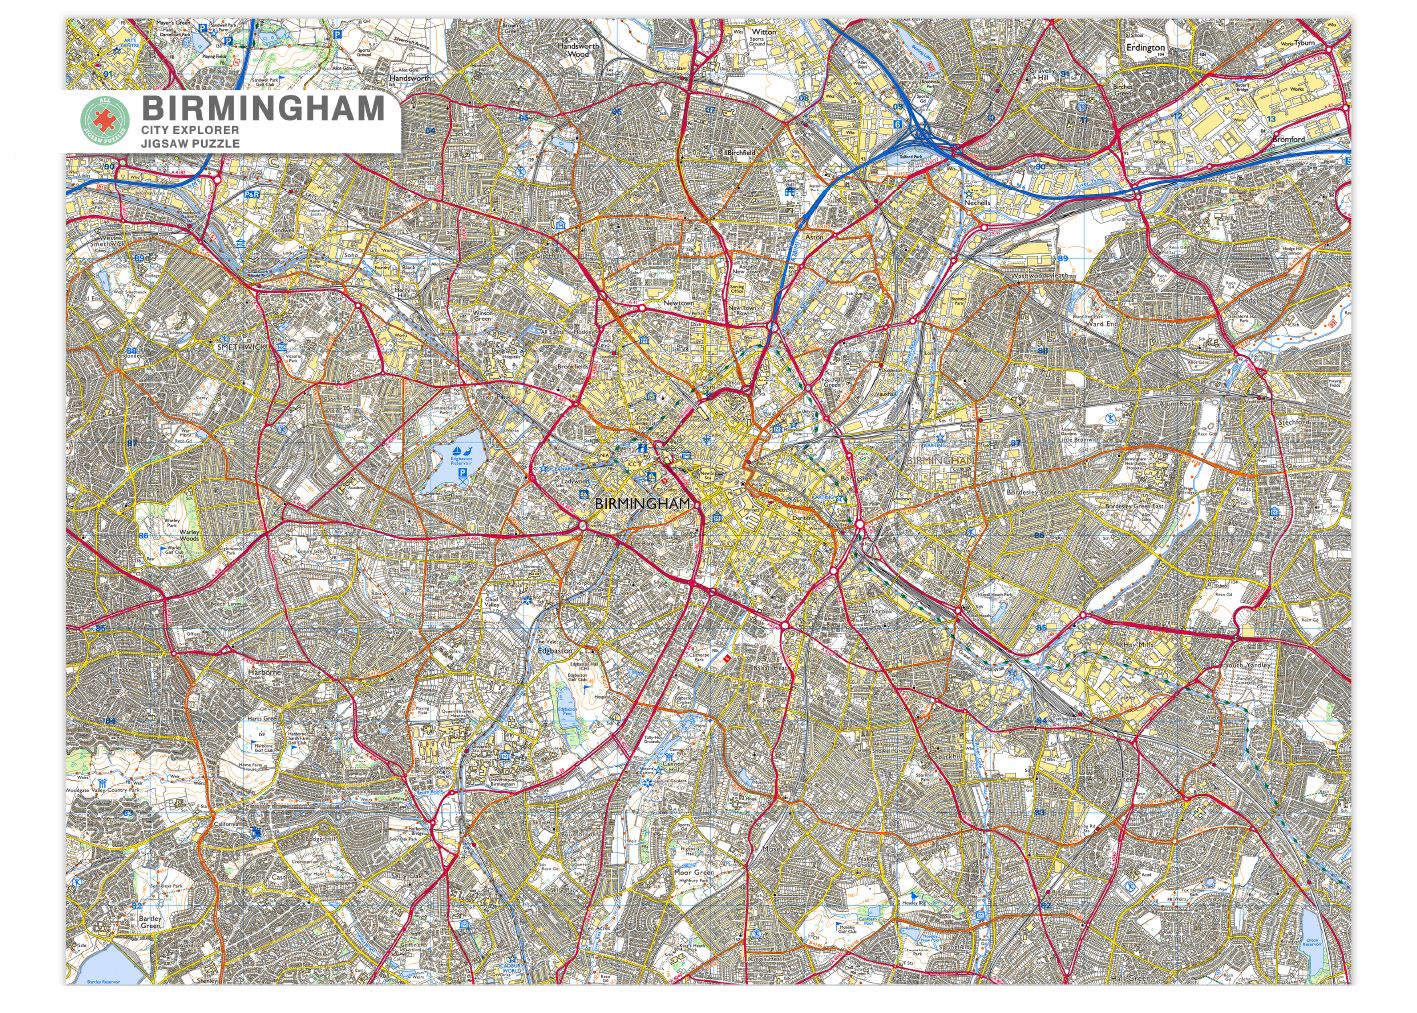 Birmingham City Map Jigsaw Puzzle - 1000 piece jigsaw puzzle